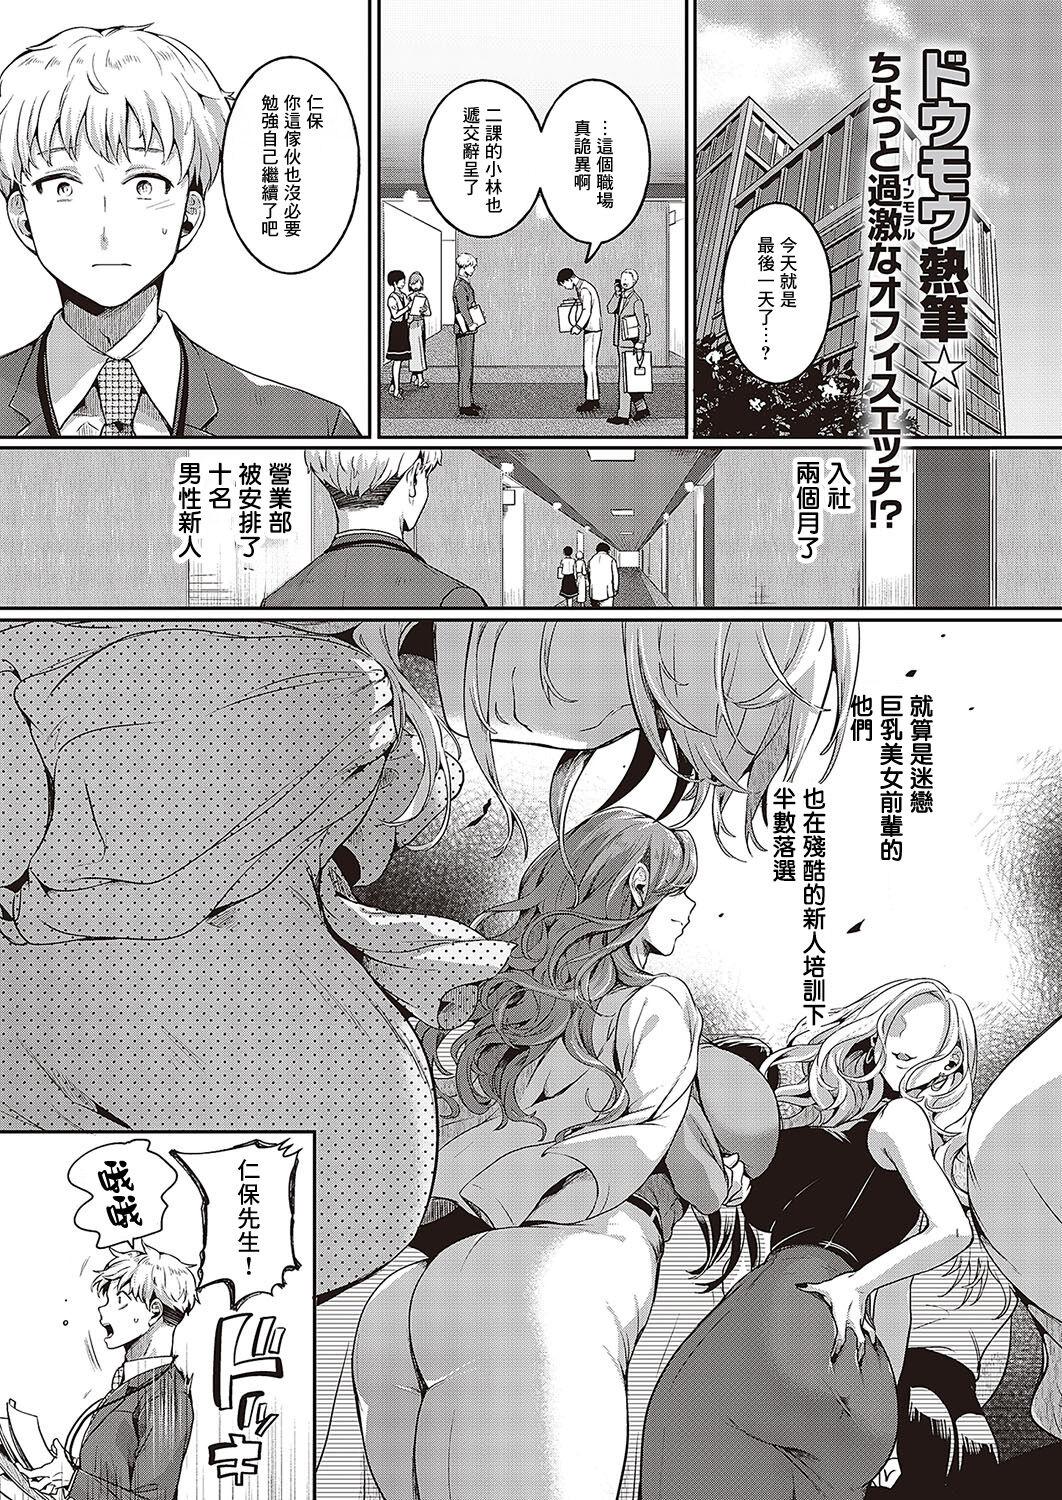 Tats Compla Ihandesu! Hiyama-san! Peluda - Page 1